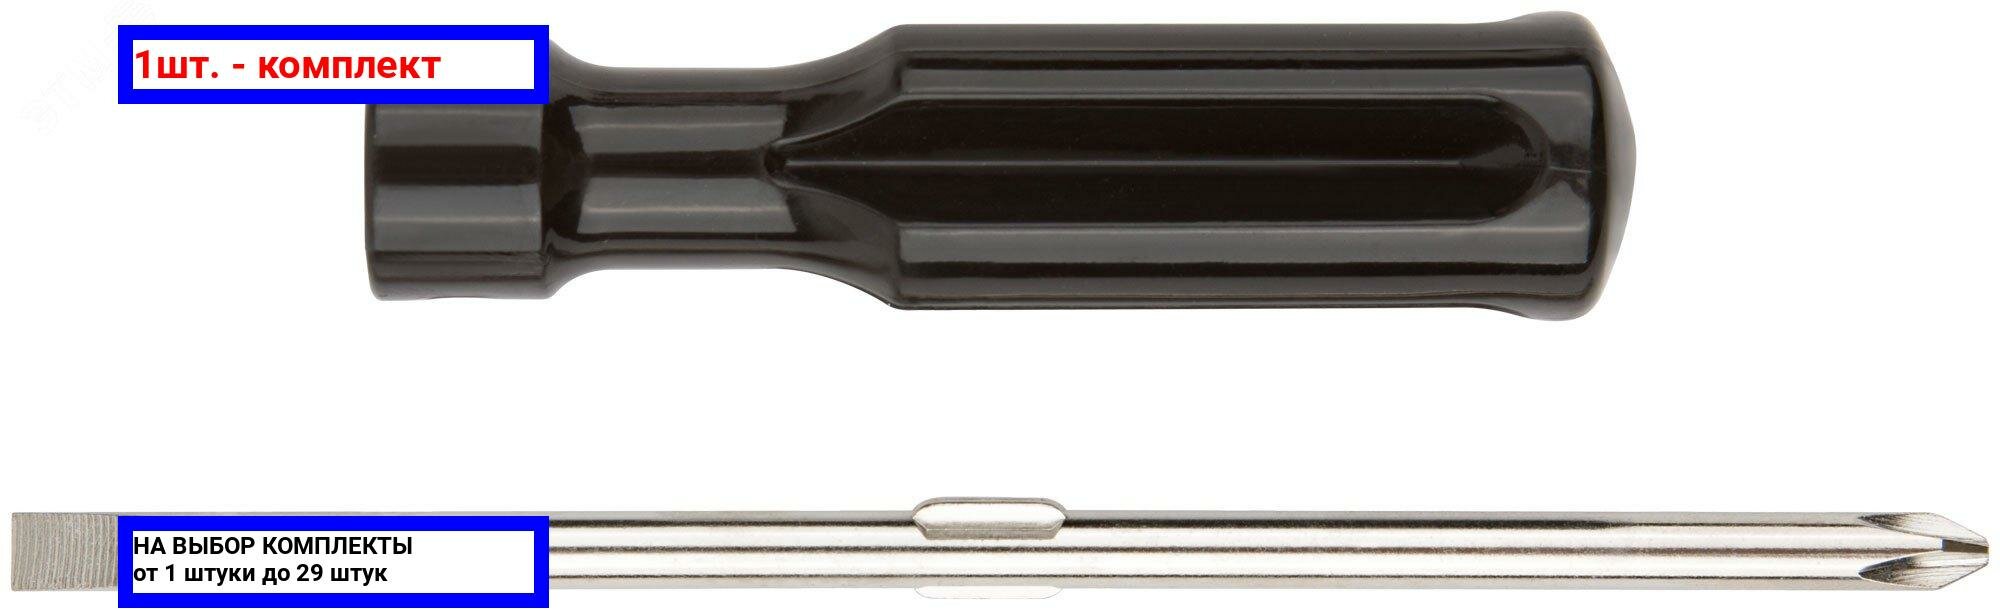 1шт. - Отвертка переставная, CrV сталь, черная пластиковая ручка 6х70 мм PH2/SL6 / FIT; арт. 56204; оригинал / - комплект 1шт